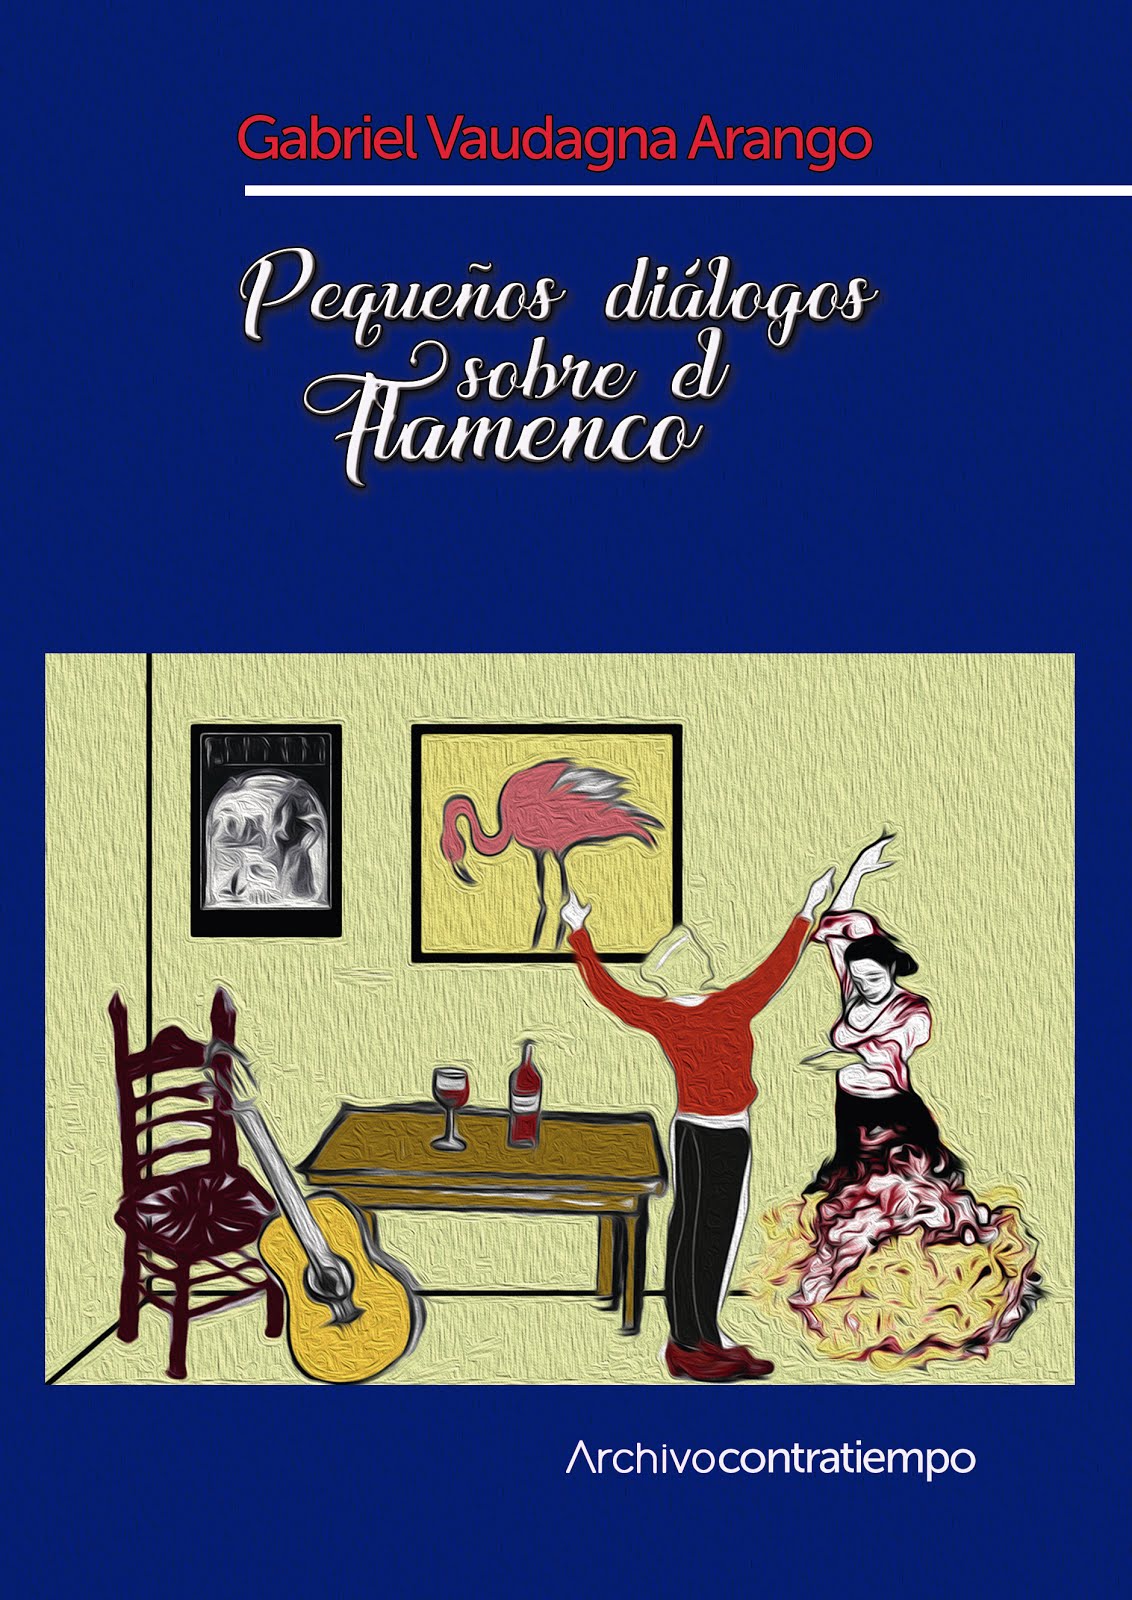 Nuevo libro de flamenco